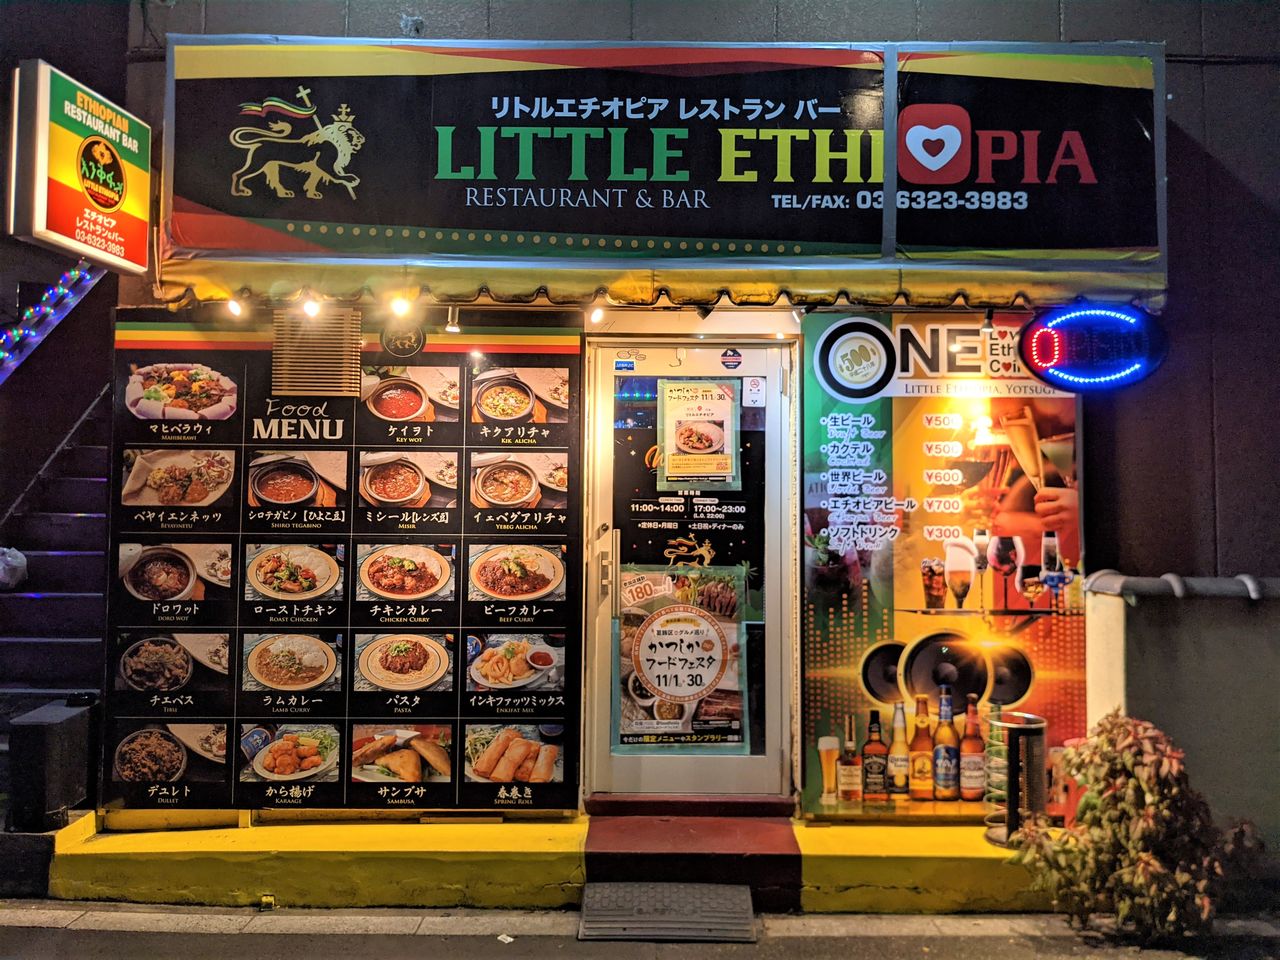 Le restaurant « Little Ethiopia » est situé tout près de la gare de Yotsugi, au bord du fleuve Ara. Sa devanture aux couleurs vives — vert, jaune et rouge — du drapeau éthiopien est loin de passer inaperçue. En revanche à l’intérieur, l’ambiance est très paisible et on est chaleureusement accueilli par Ephrem et son épouse Mina.